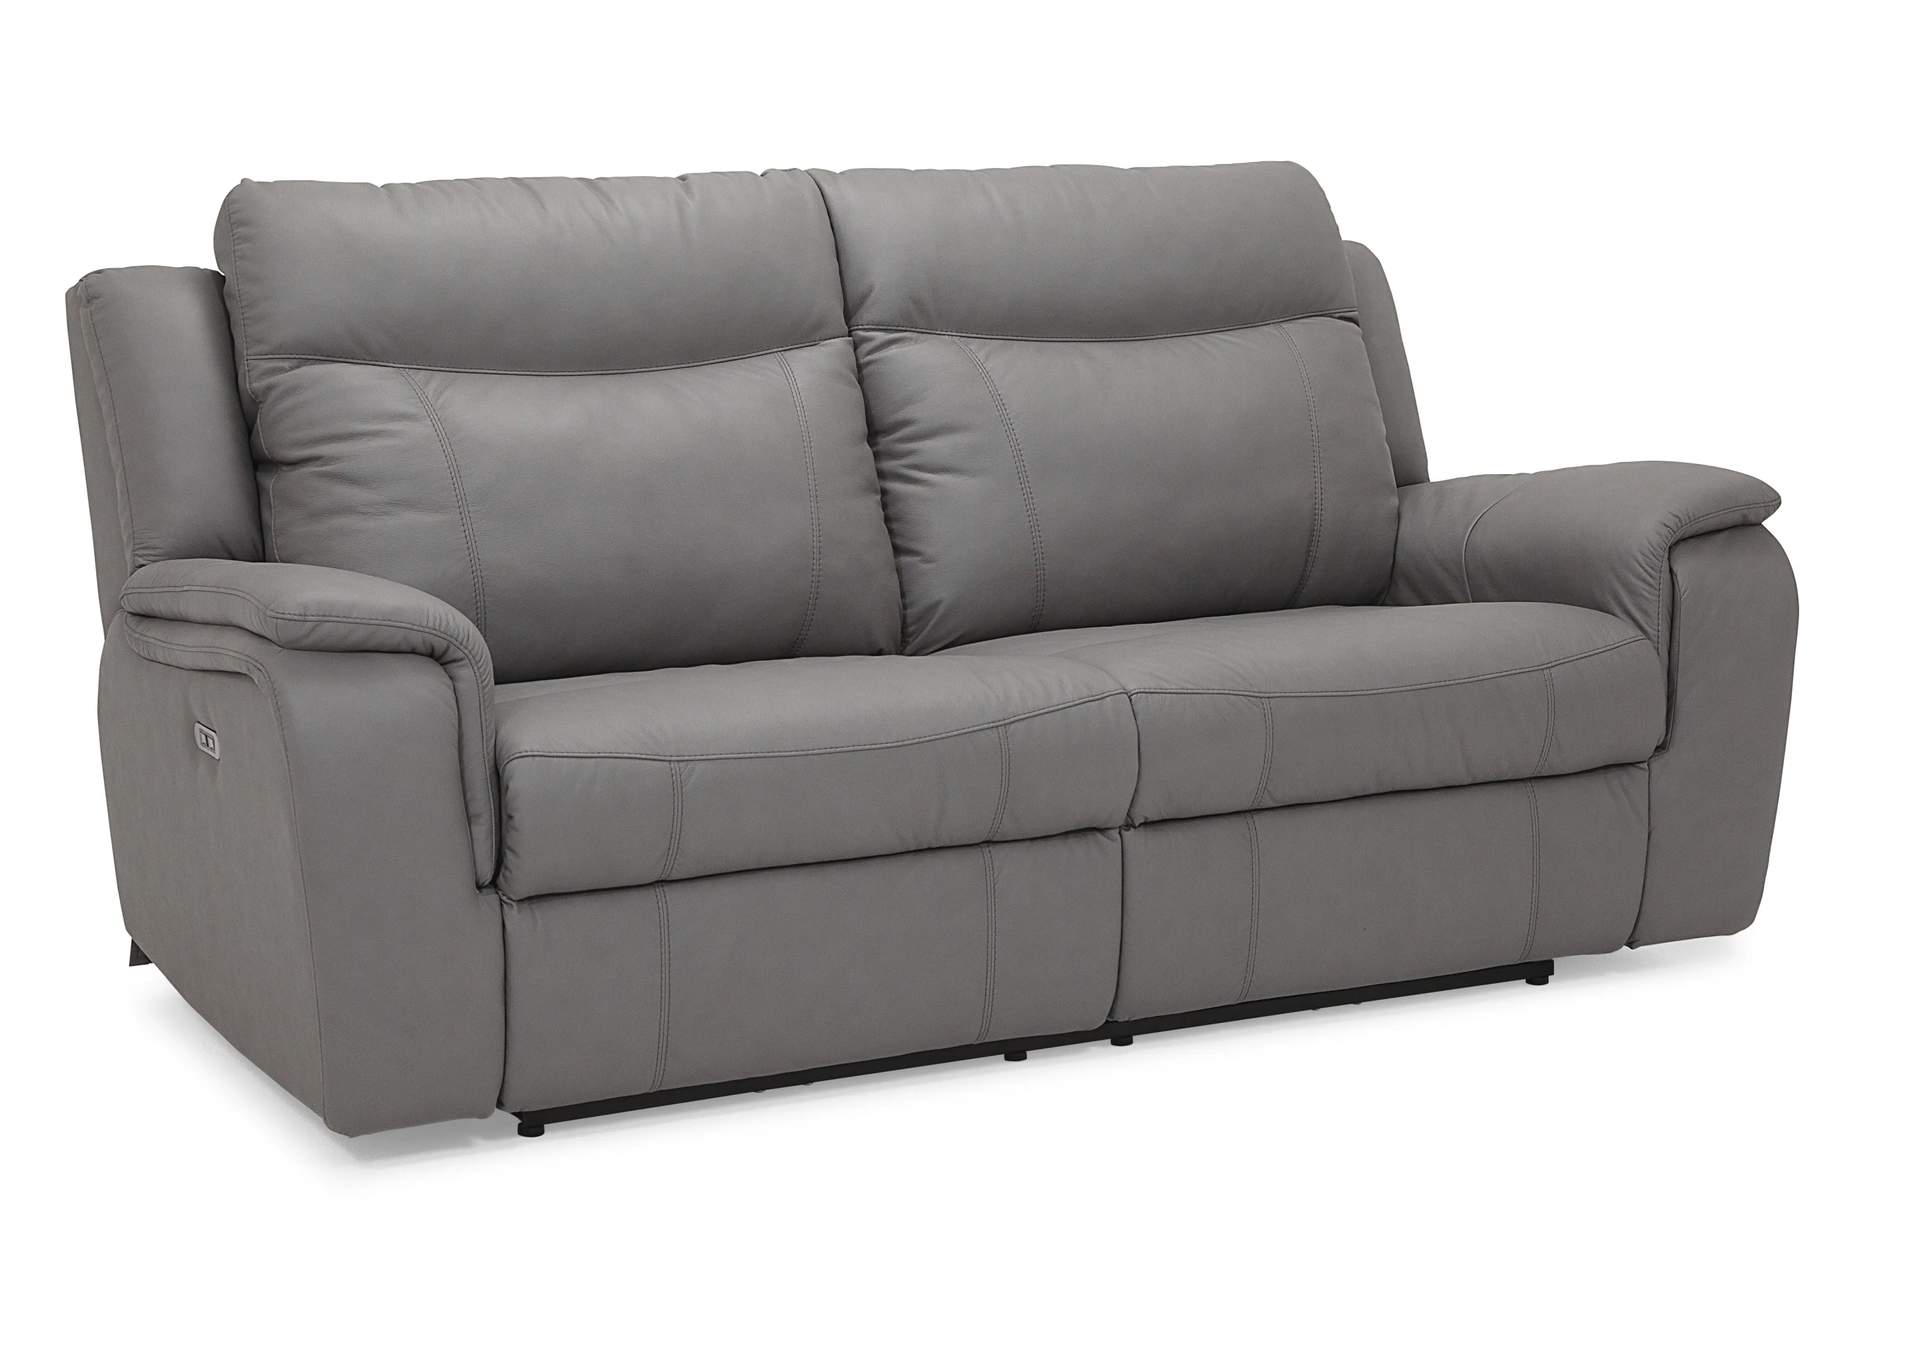 Buckingham Sofa Power Recliner w/ Power Headrest,Palliser Furniture